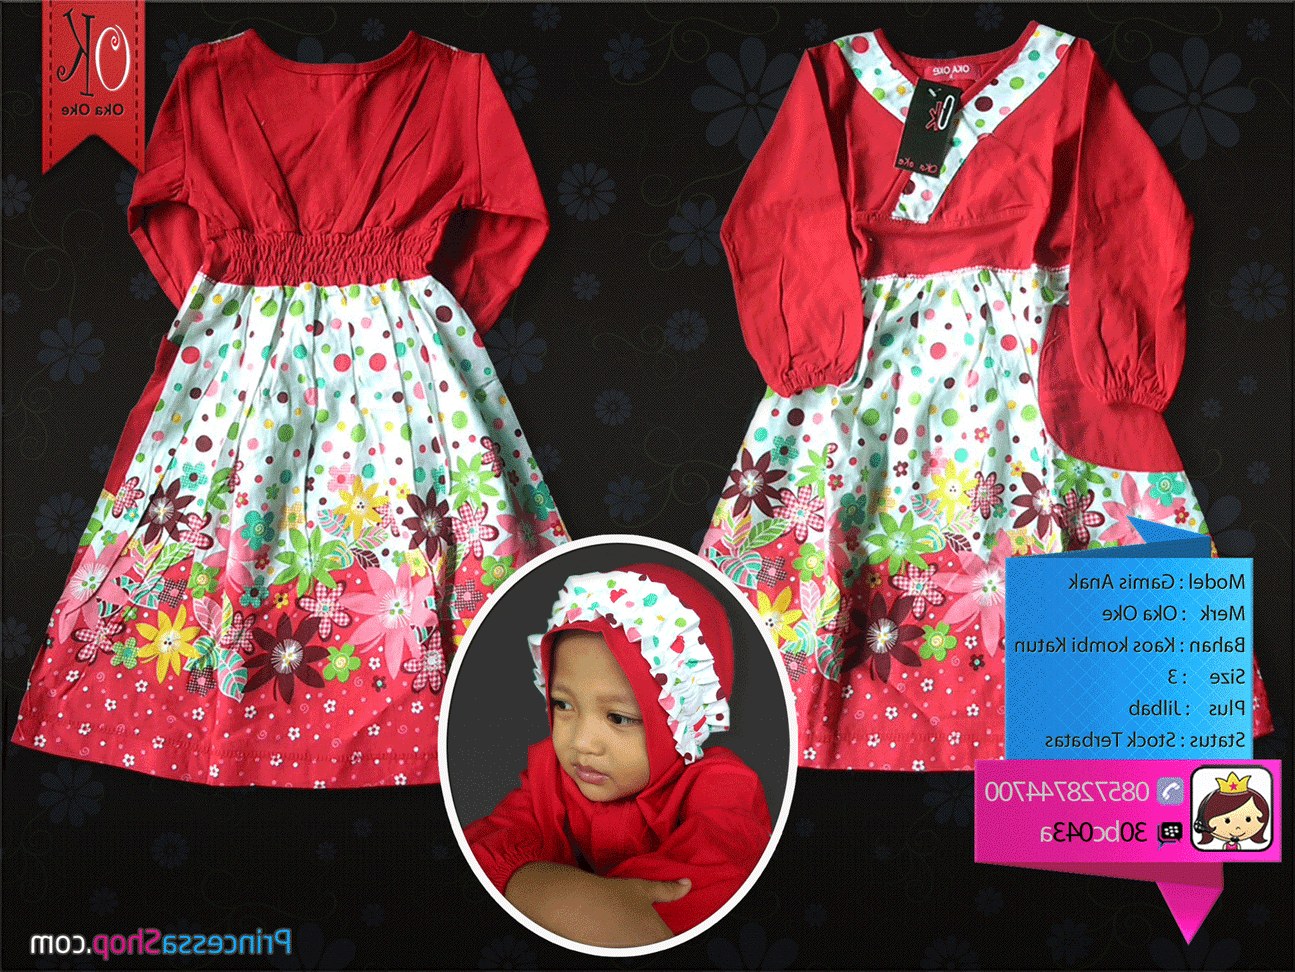 Bentuk Baju Lebaran Anak Perempuan Umur 3 Tahun Ipdd Model Baju Muslim Anak Terbaru